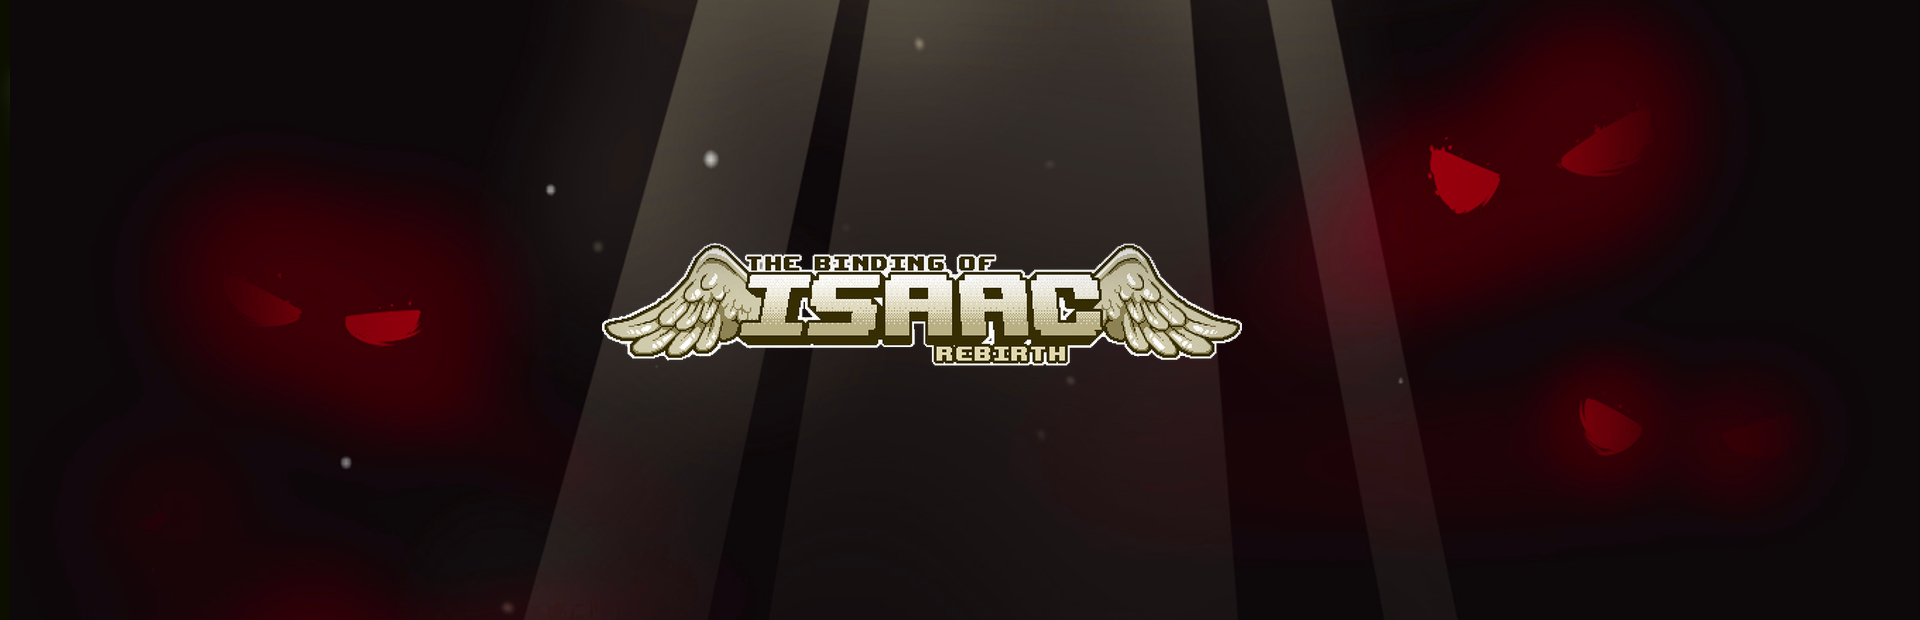 دانلود بازی The Binding of Isaac: Rebirth برای PC | گیمباتو